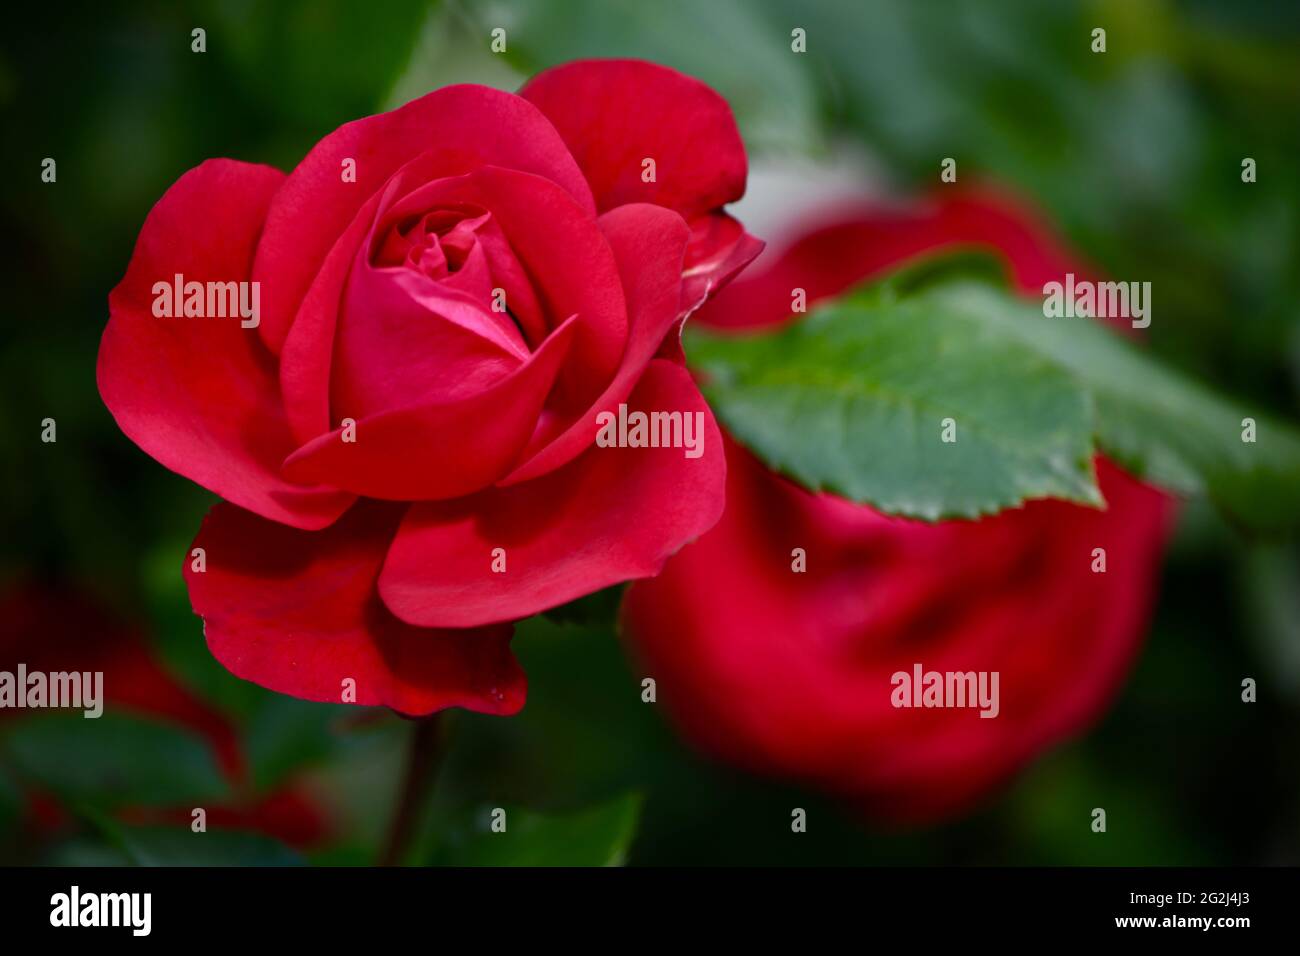 Heilpflanze Rose - rosa - mit herrlicher roter Rosenblüte als Zeichen der Liebe und Freudschaft - Grundstock der europäischen Gartenkultur, Heilpflan Banque D'Images